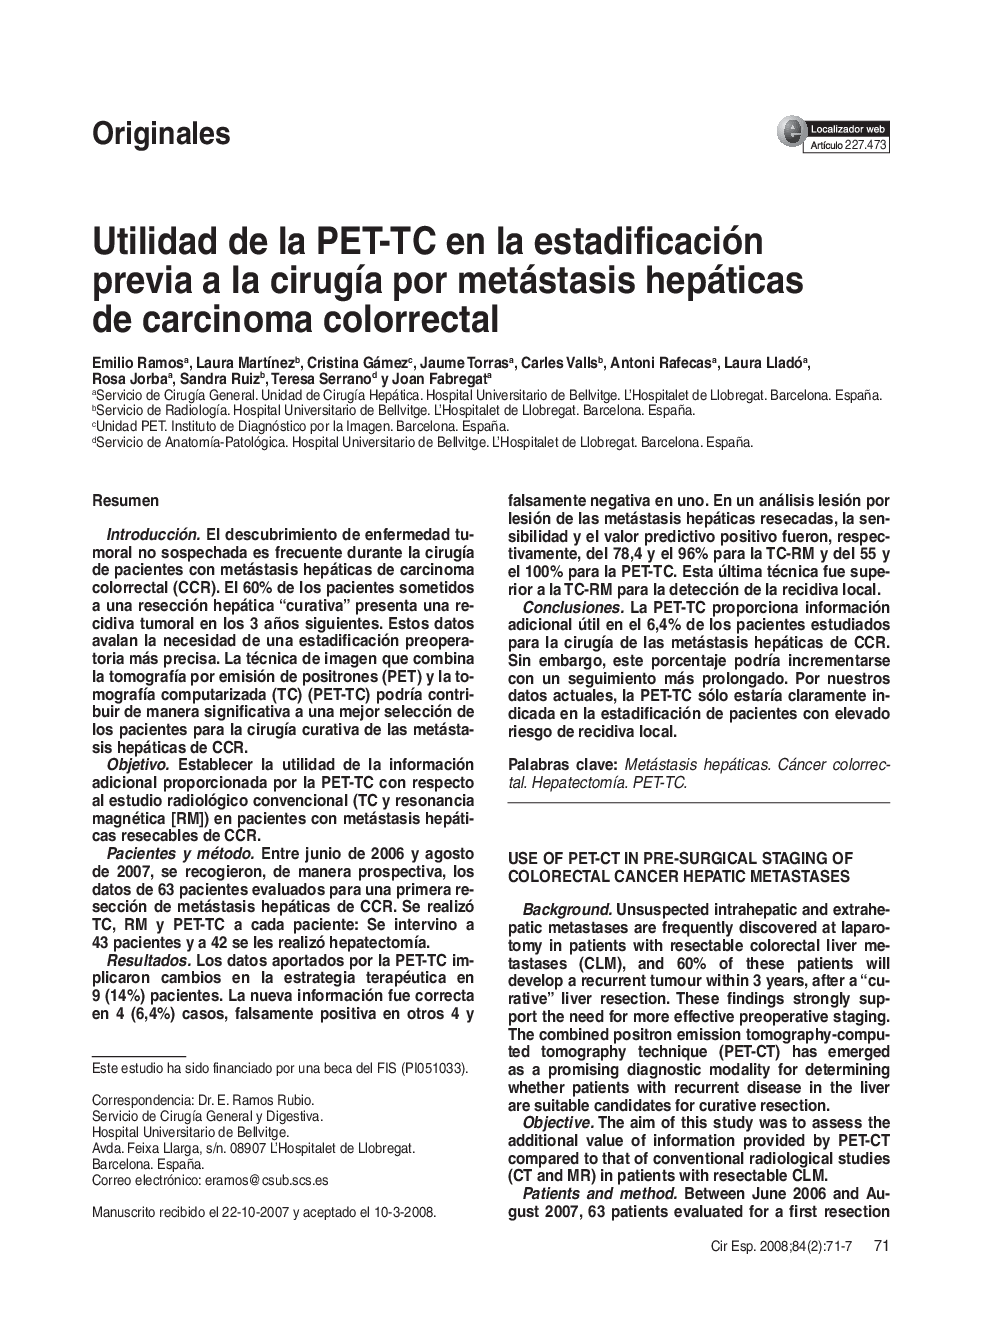 Utilidad de la PET-TC en la estadificación previa a la cirugÃ­a por metástasis hepáticas de carcinoma colorrectal